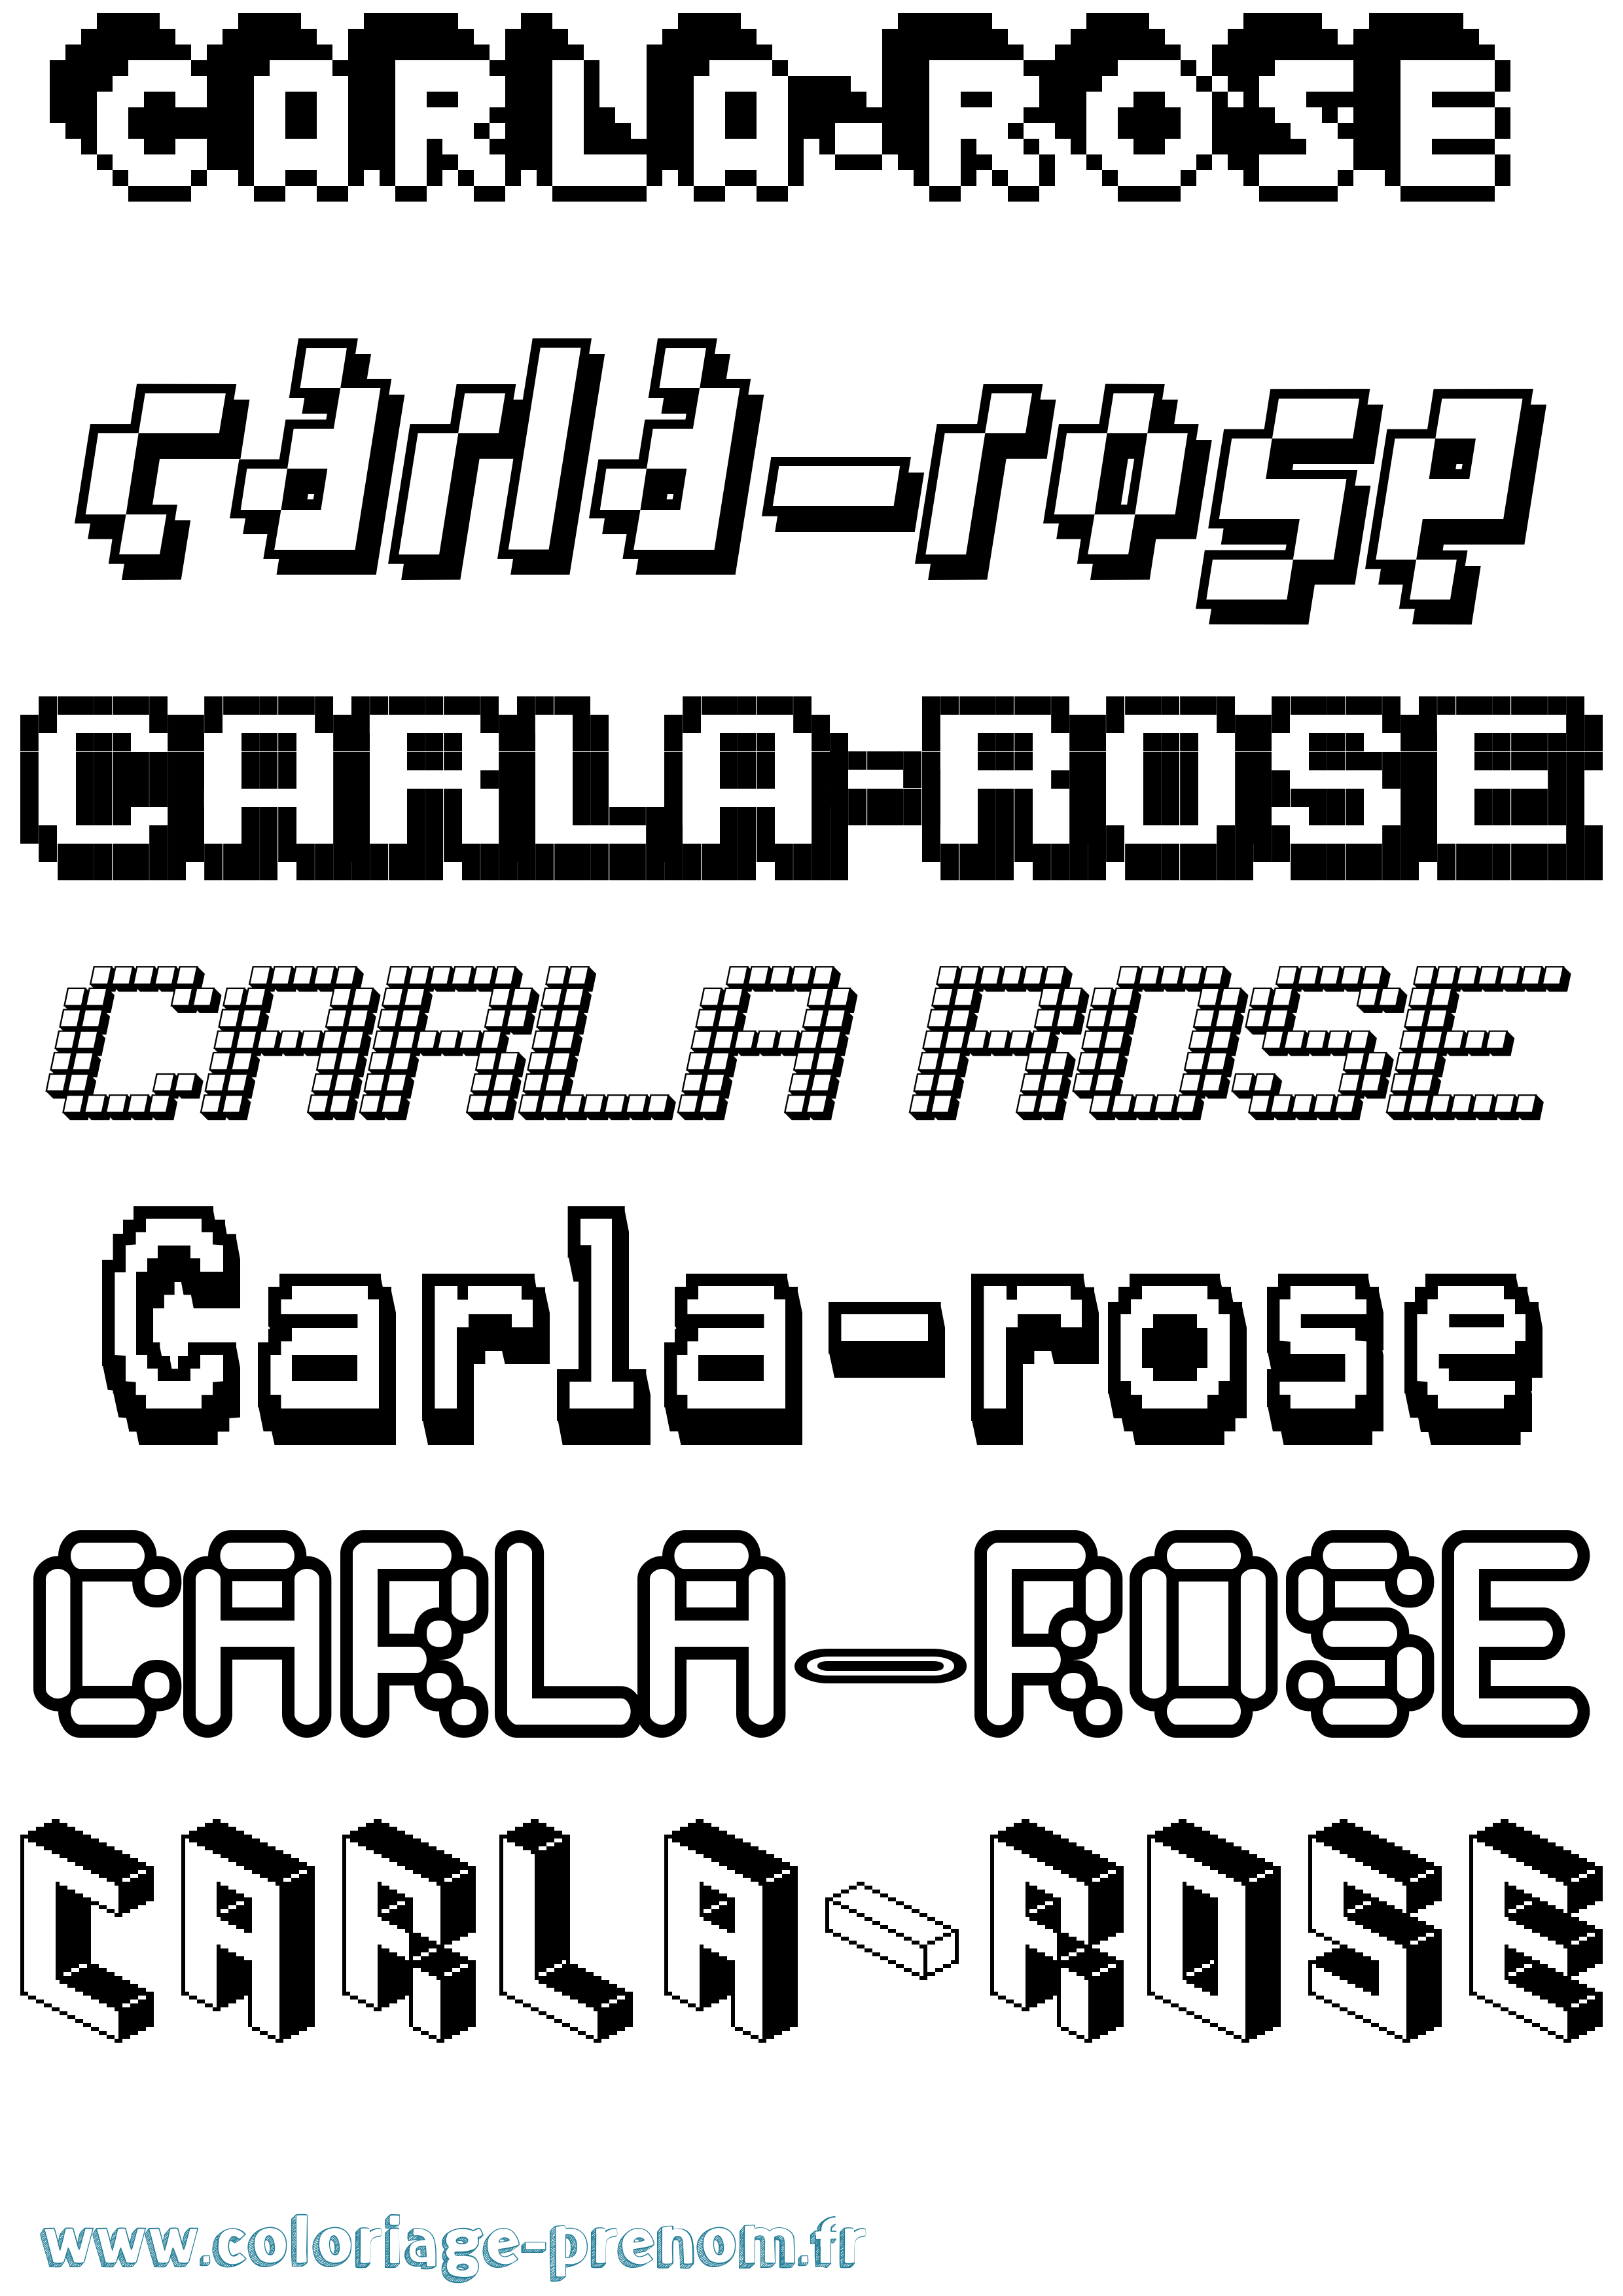 Coloriage prénom Carla-Rose Pixel